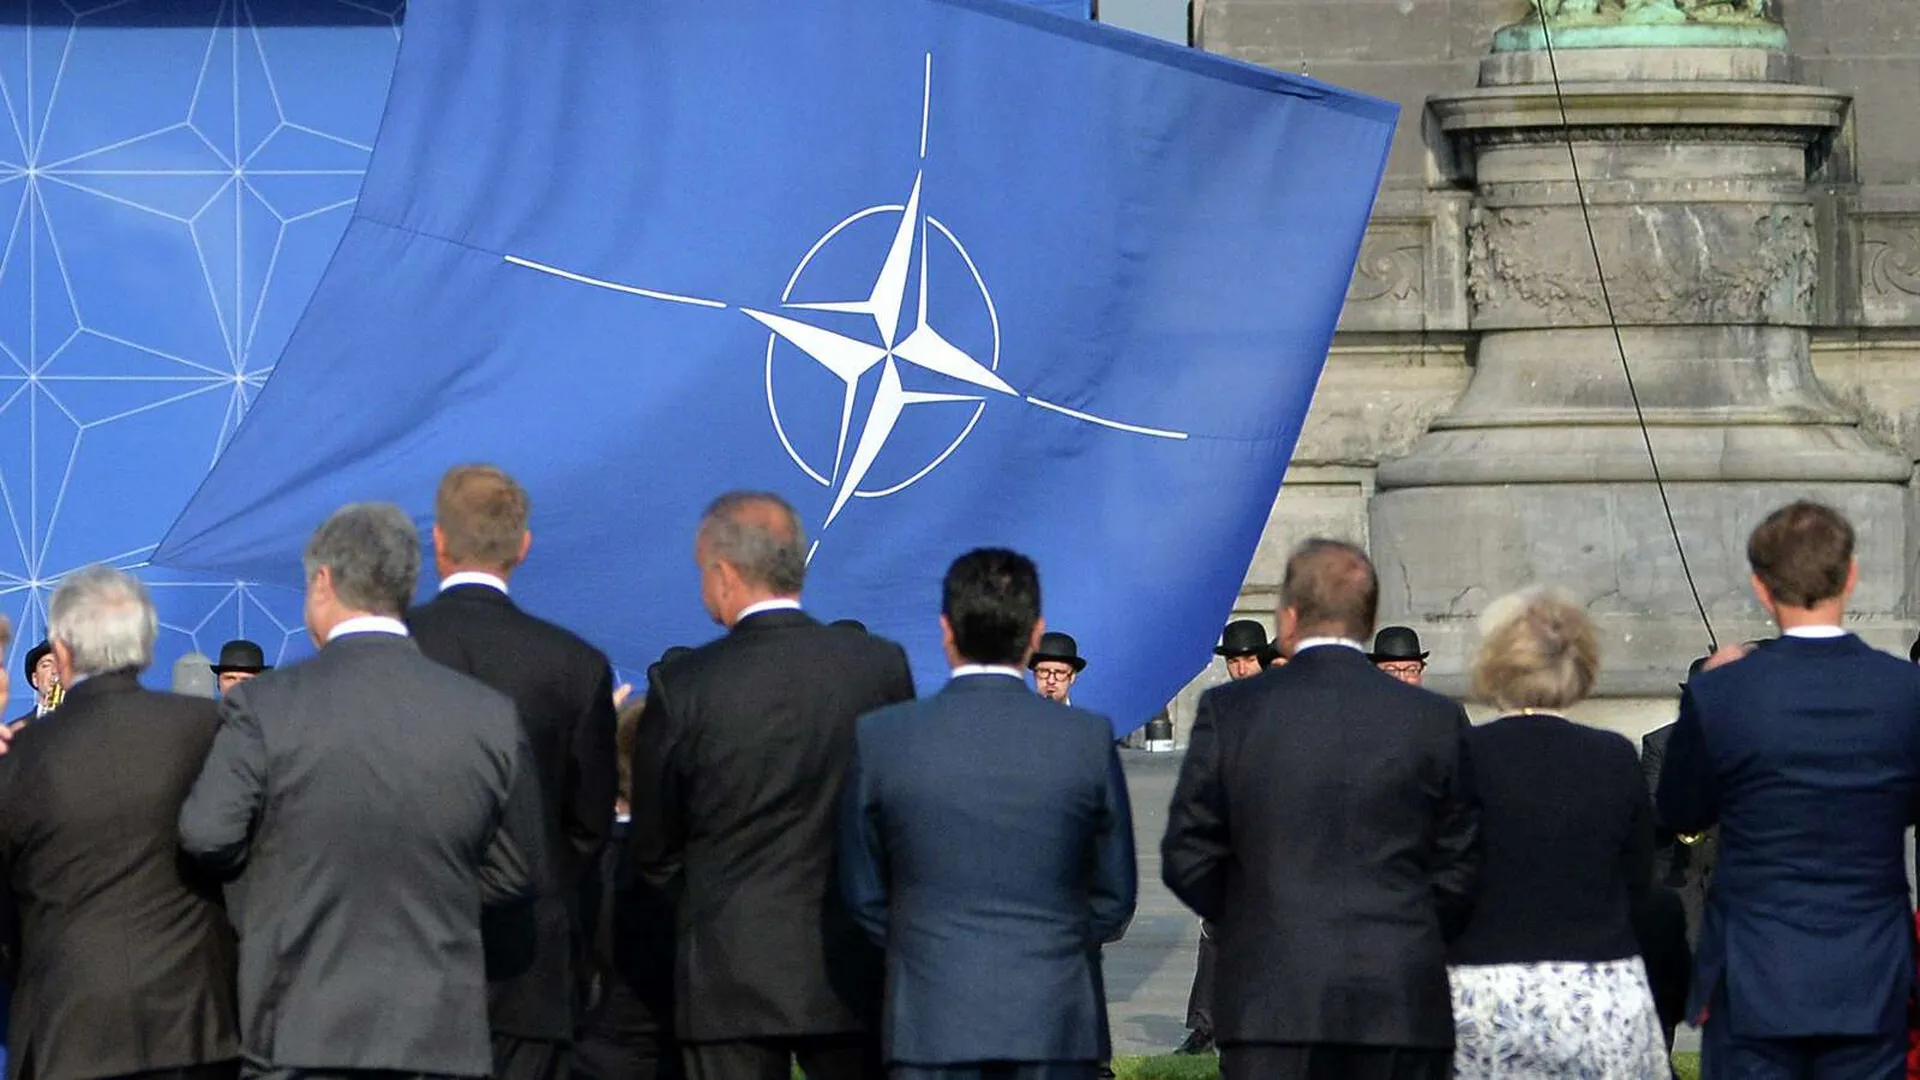 «Пентагон бьет в бубен Третьей мировой». США и НАТО не могут договориться об отношении к России